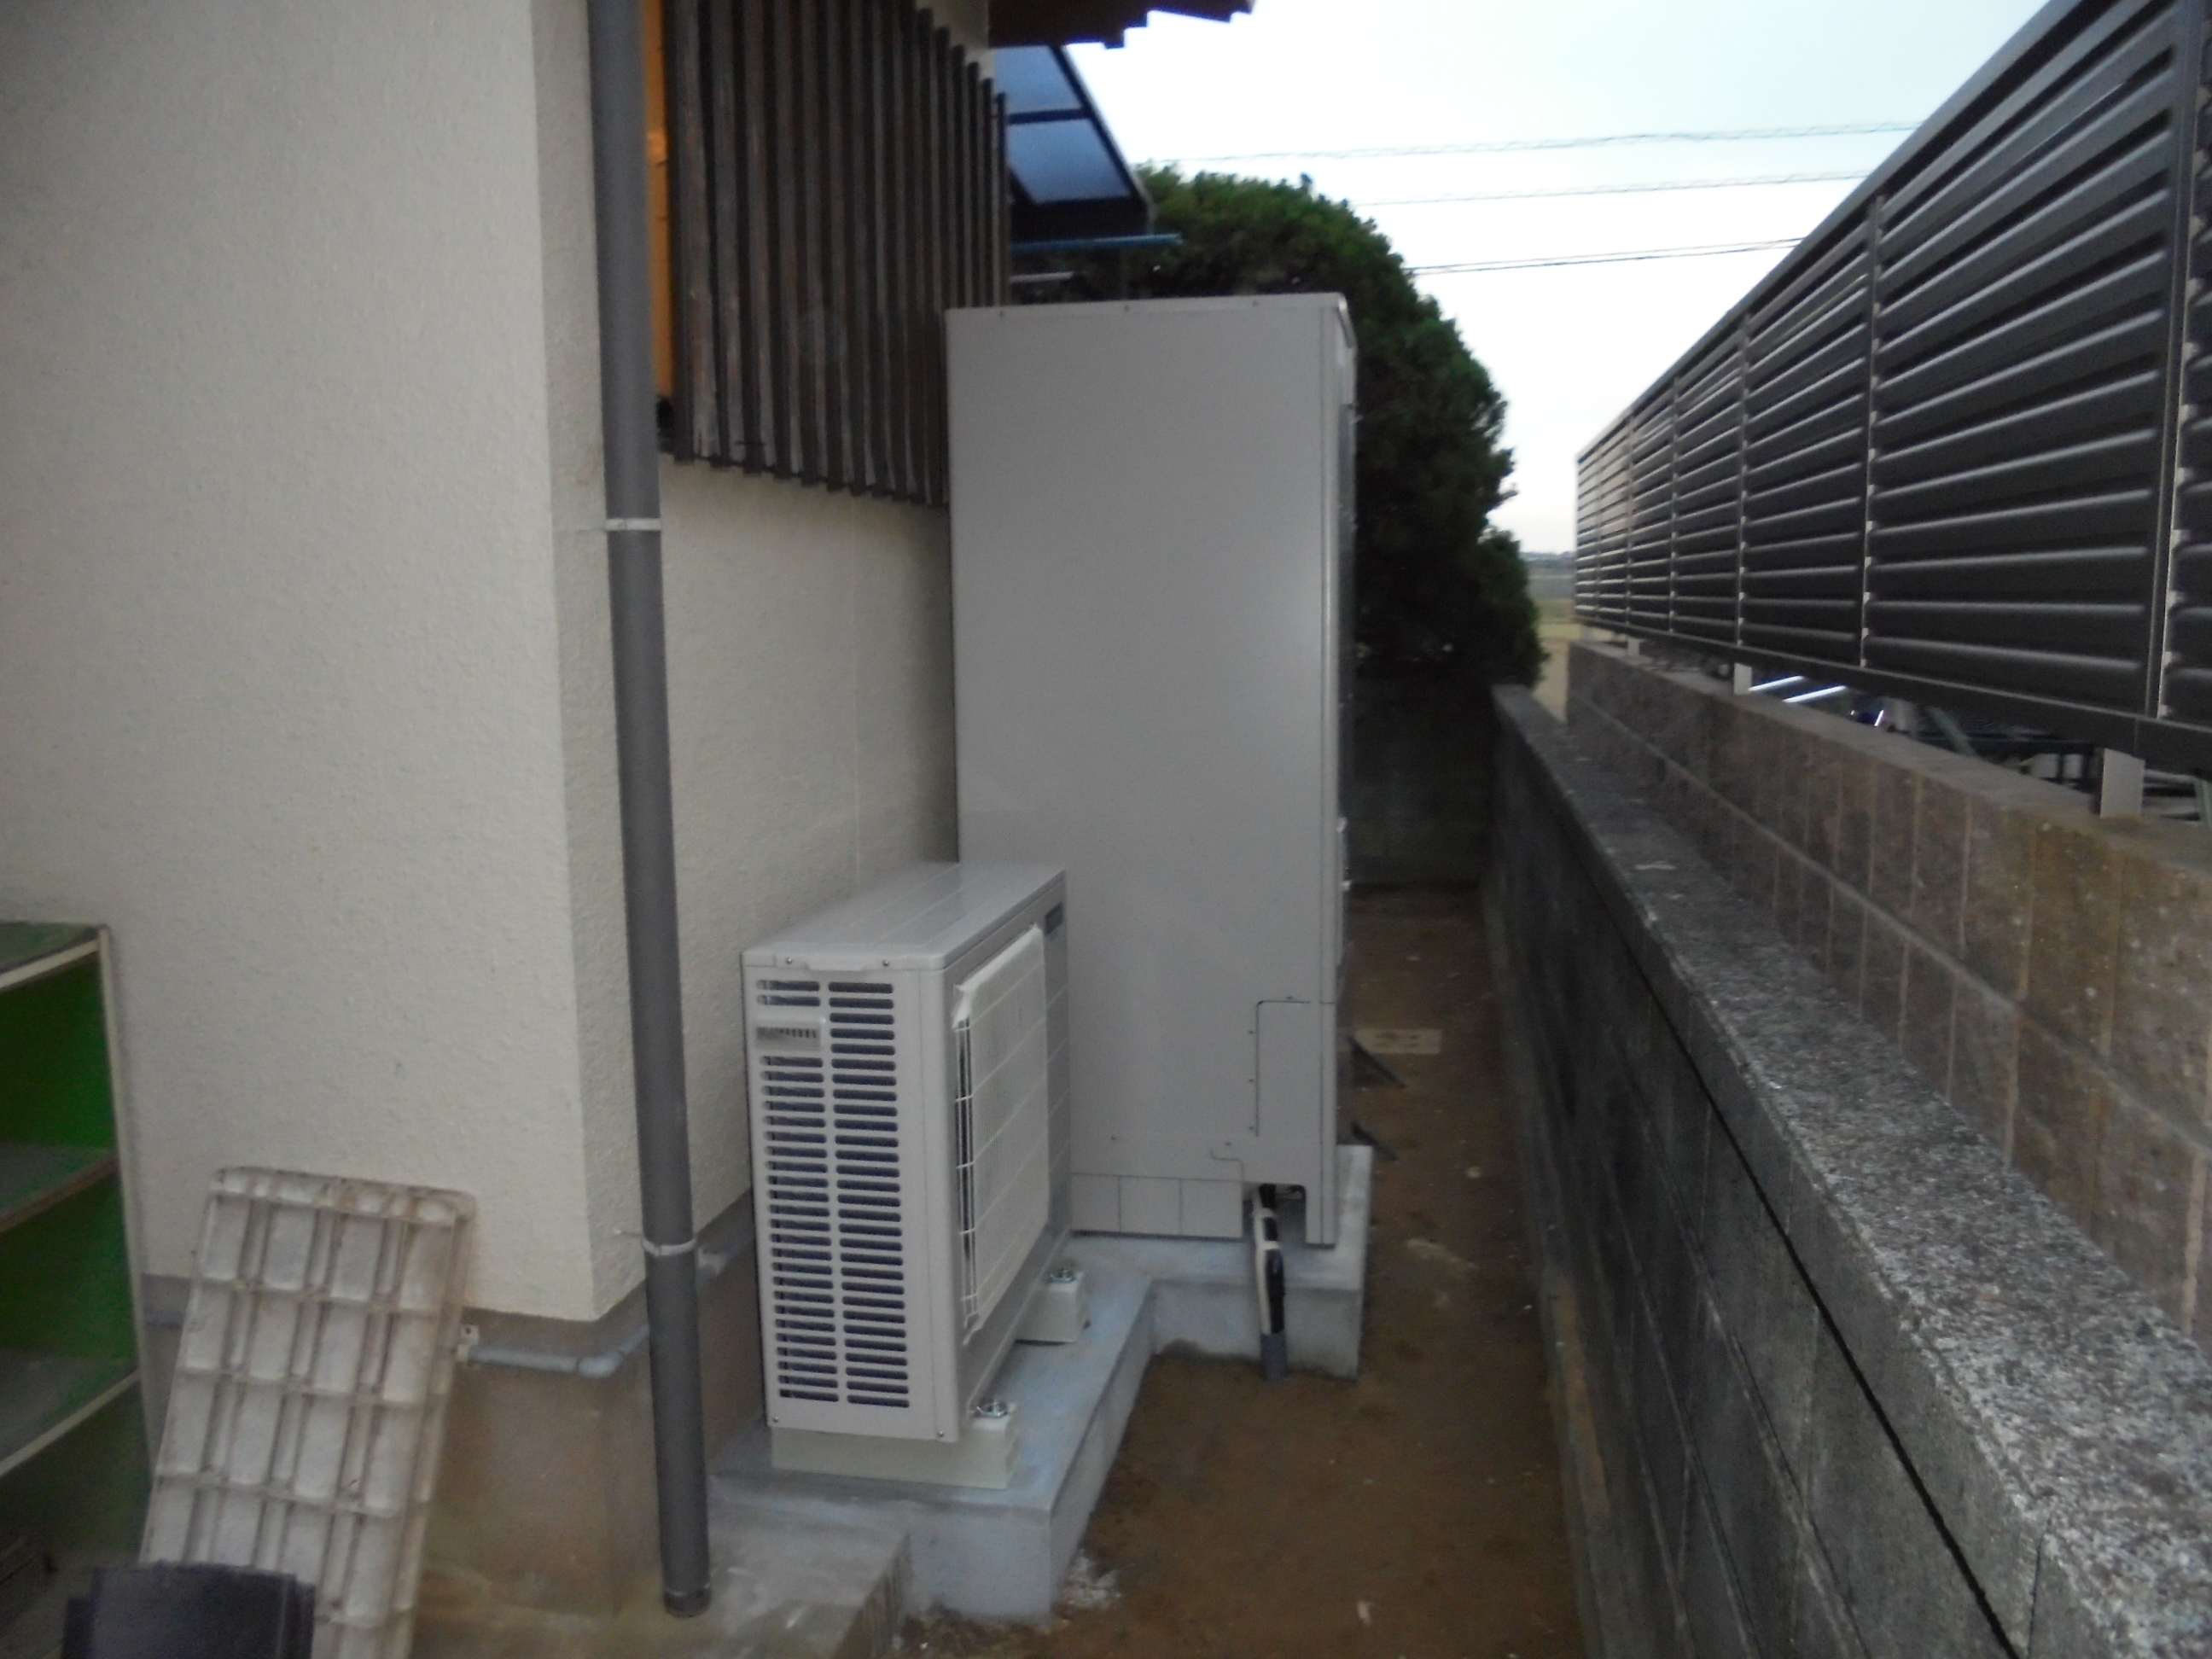 ガス給湯器からエコキュートに交換 宗像市 - - 福岡、北九州市のエコキュート、電気温水器、オール電化